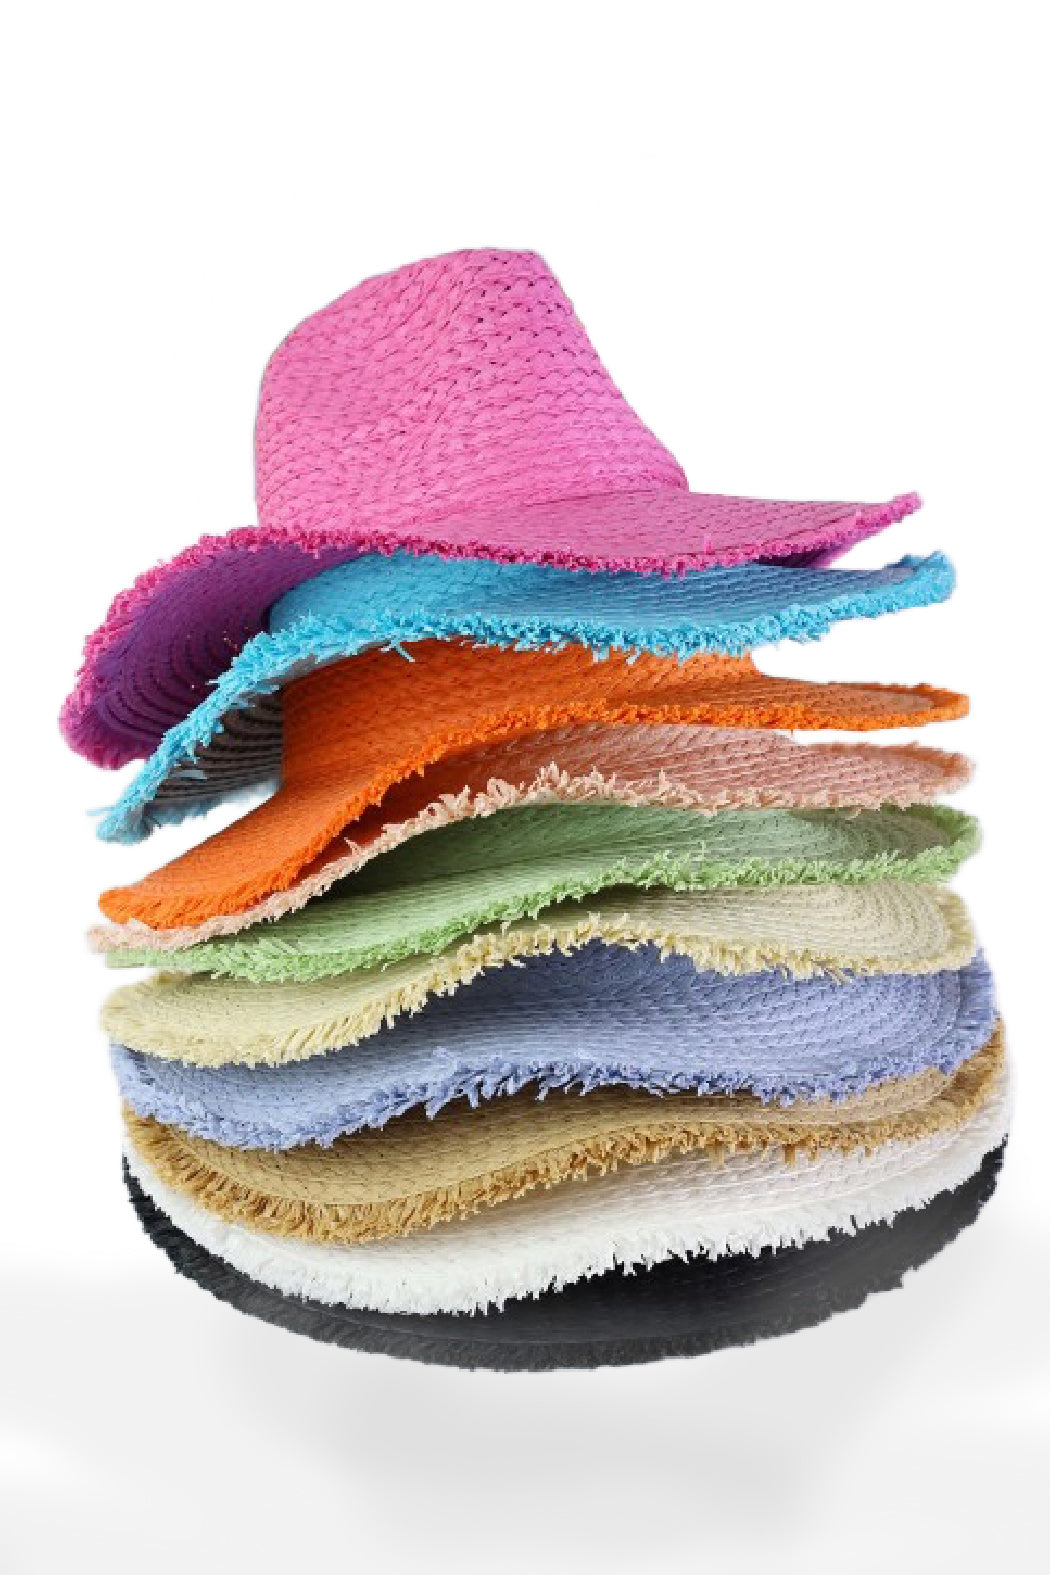 Straw Fringed Panama Hat